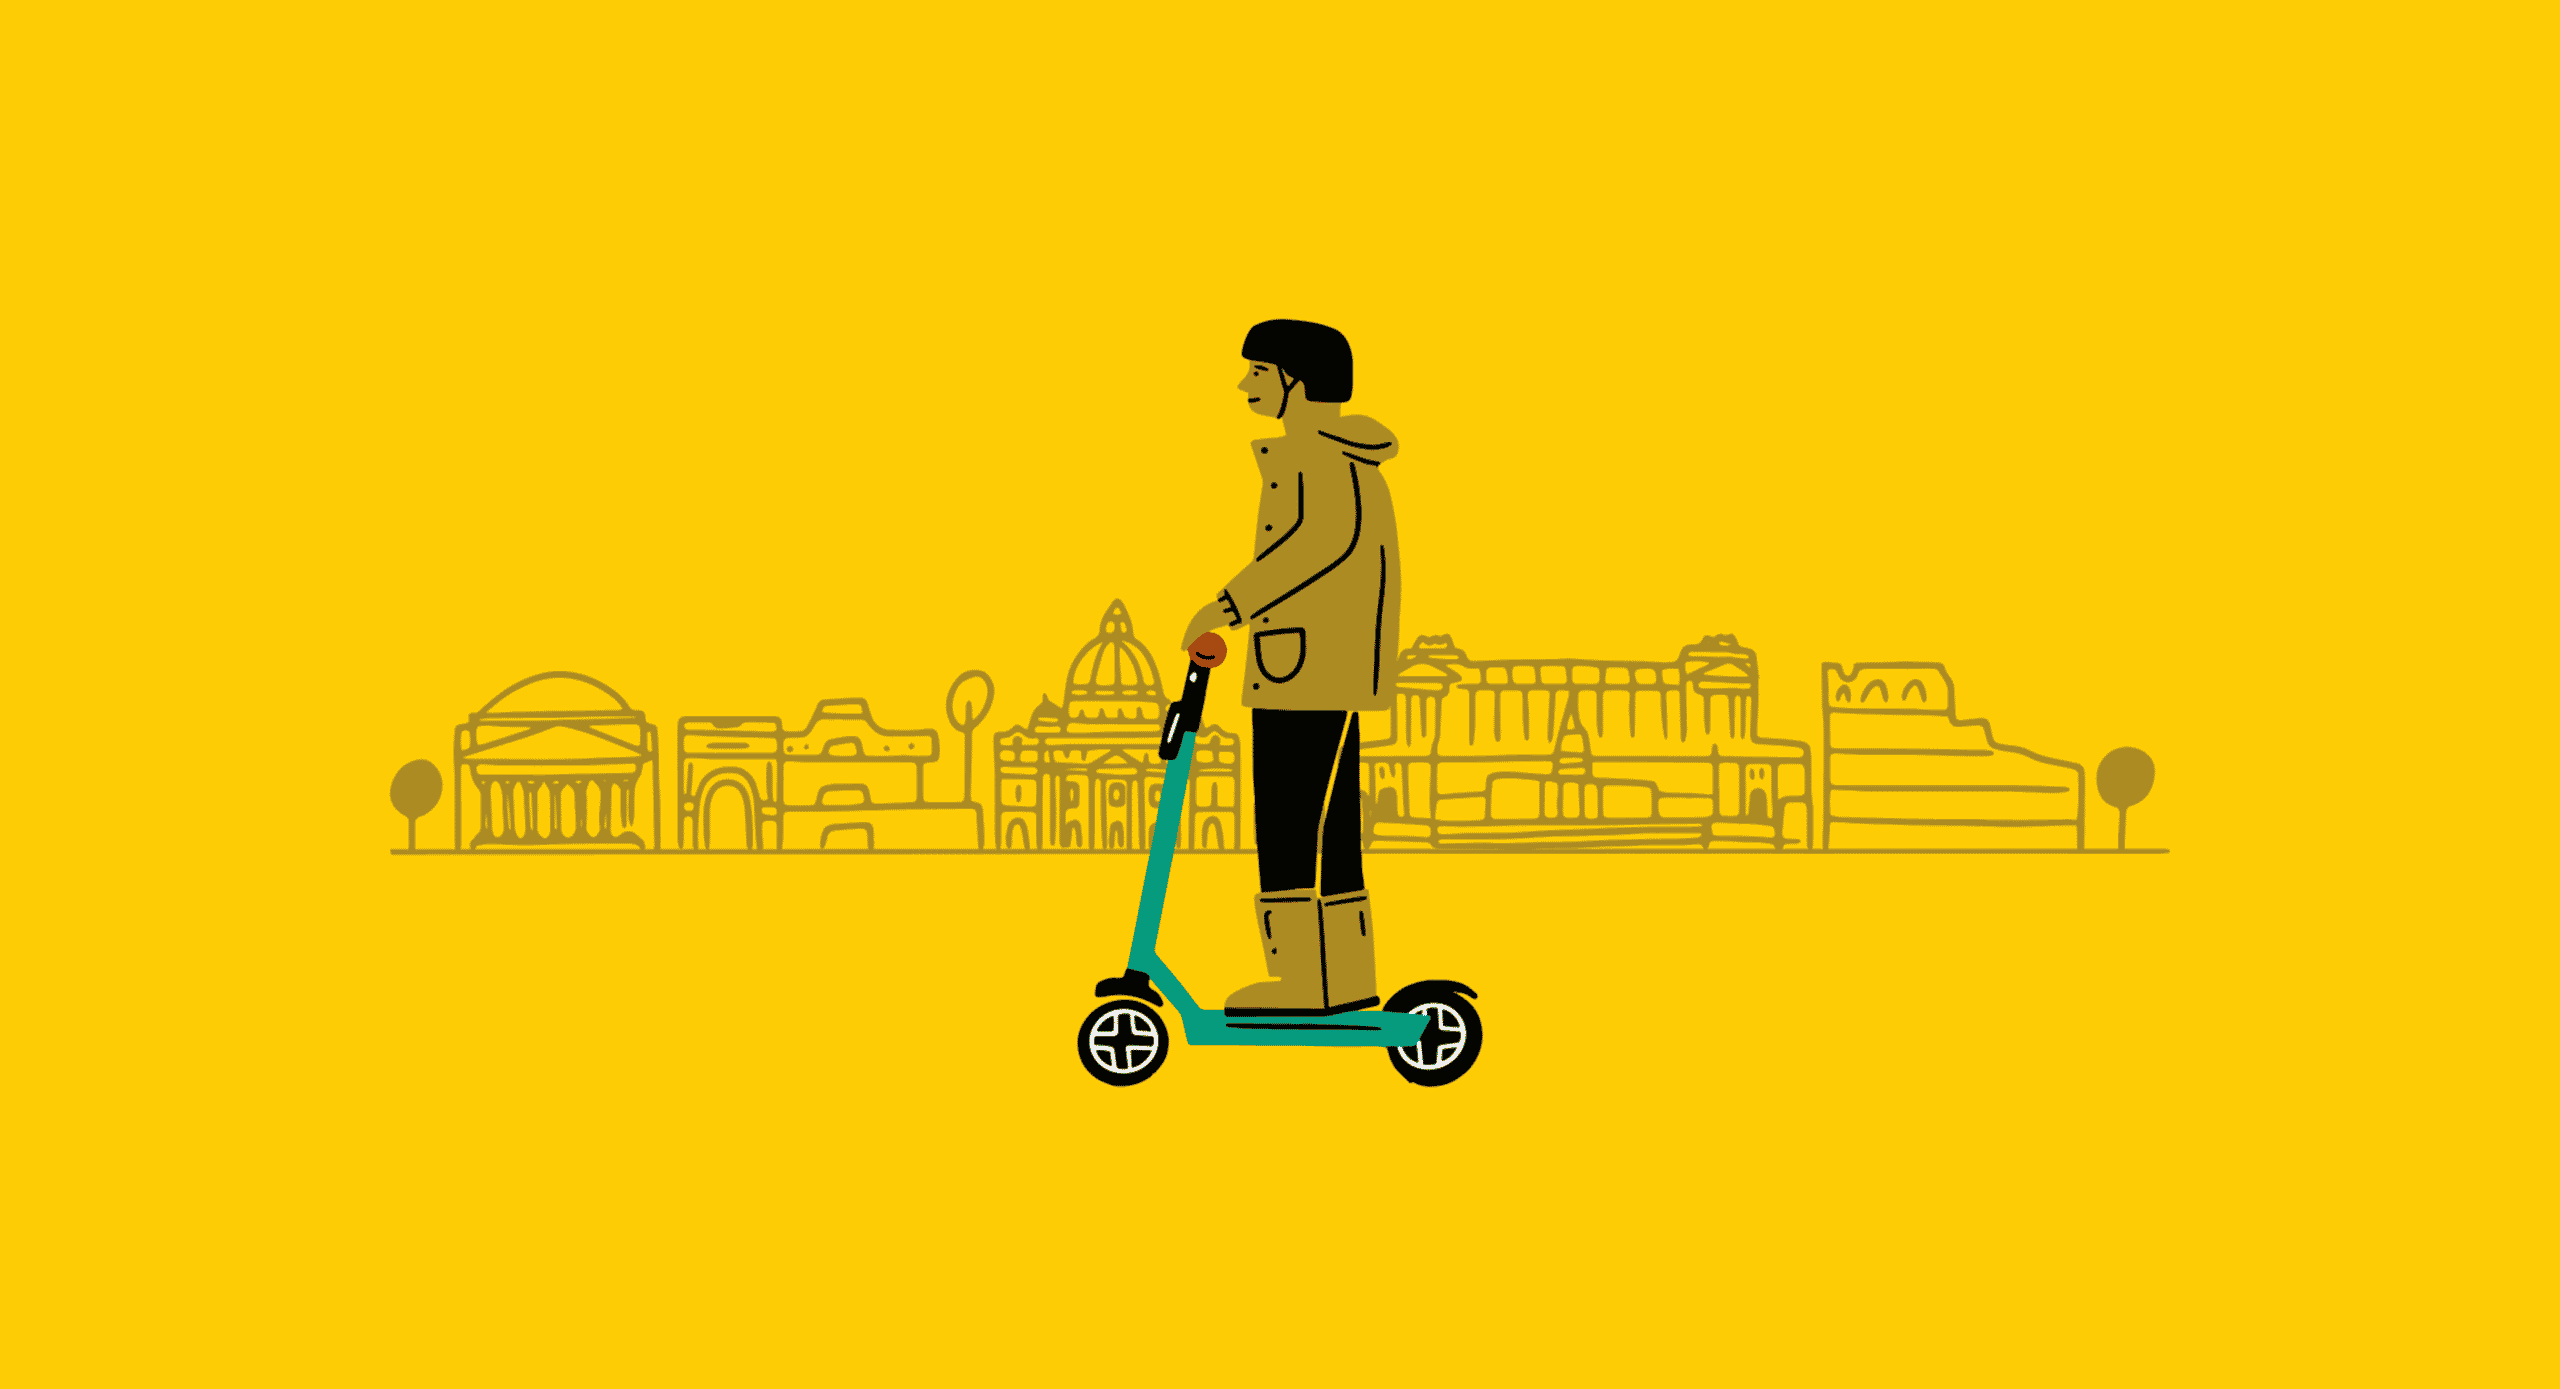 Un'illustrazione di un uomo che guida uno scooter Dott con uno sfondo giallo, sorride.